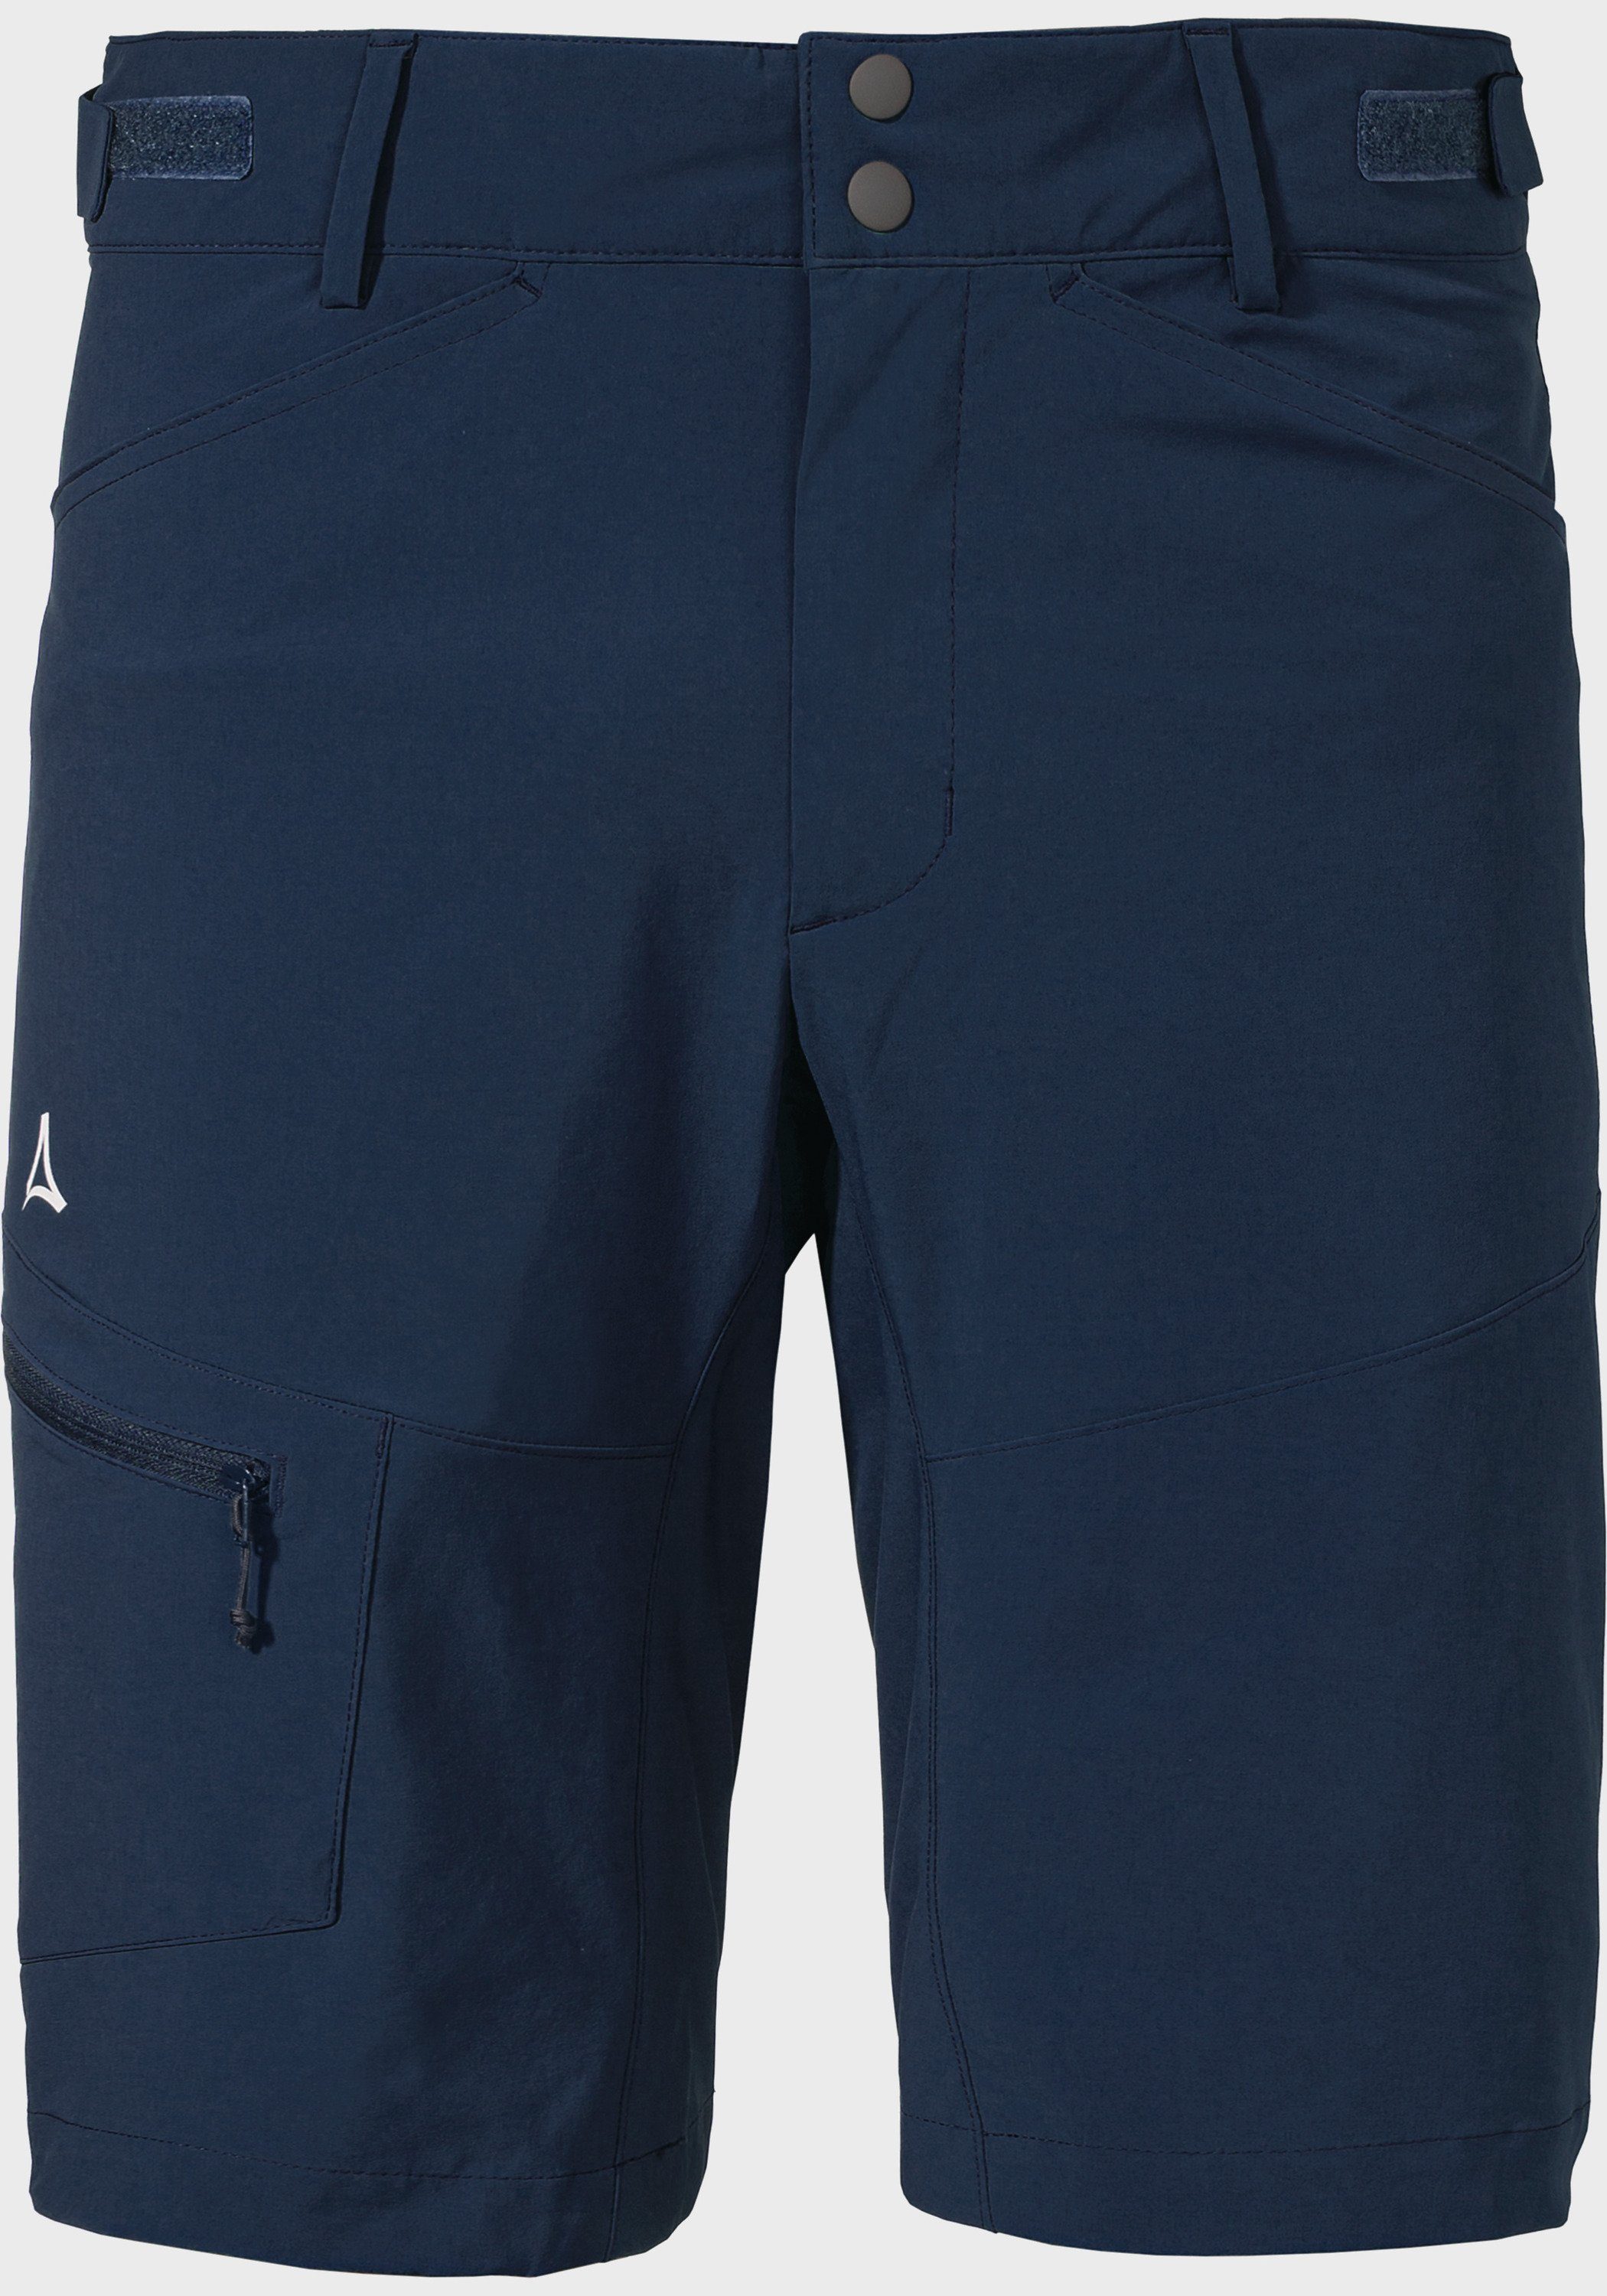 Shorts Schöffel blau Shorts M Algarve